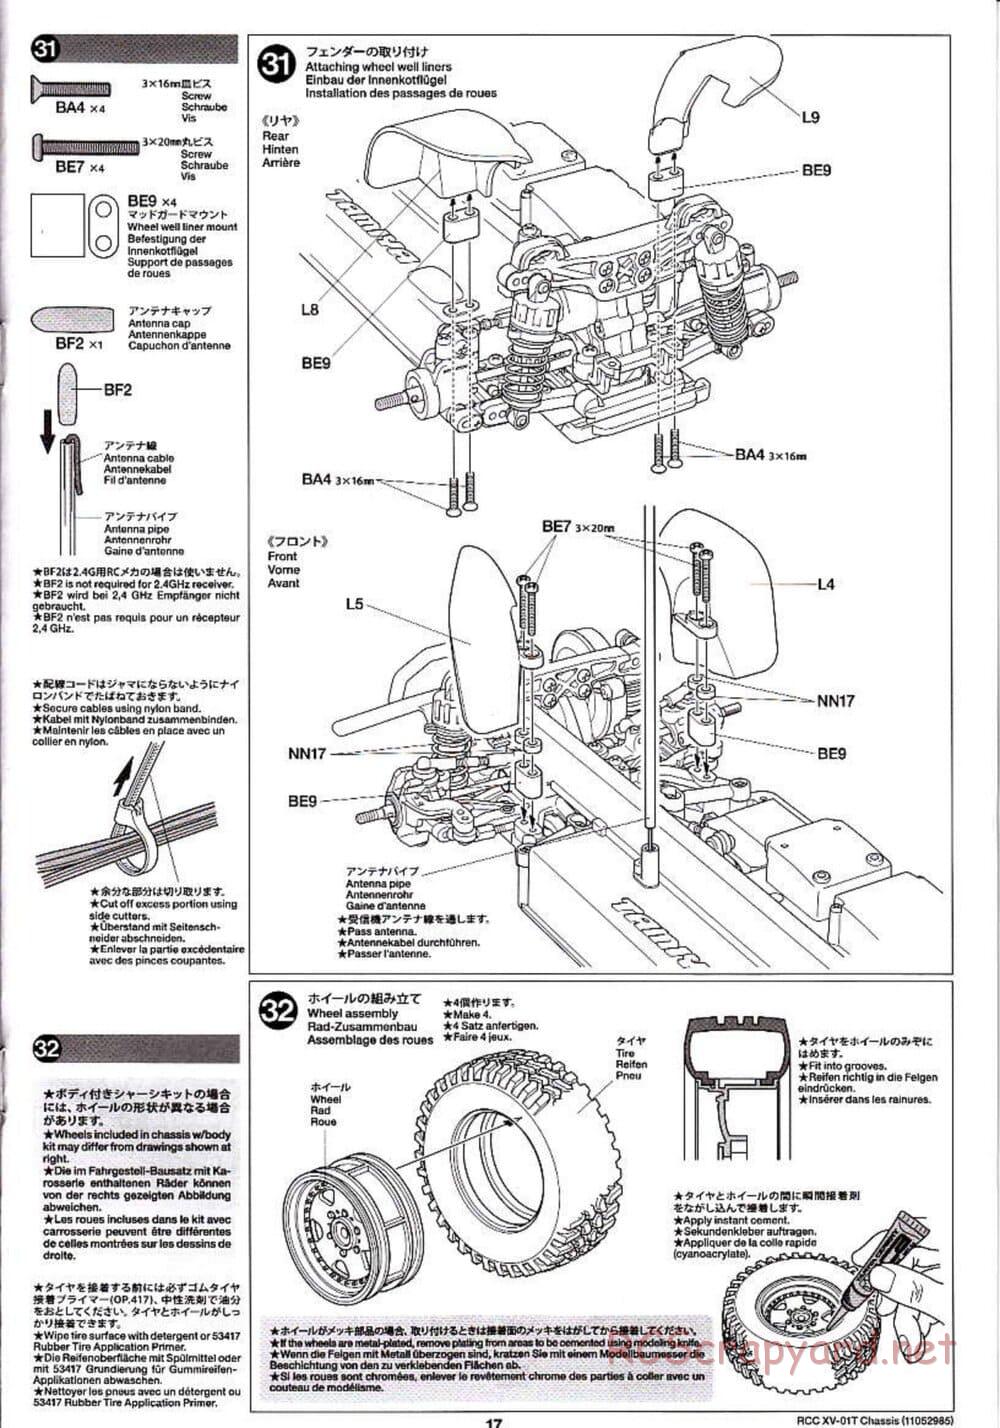 Tamiya - XV-01T Chassis - Manual - Page 17